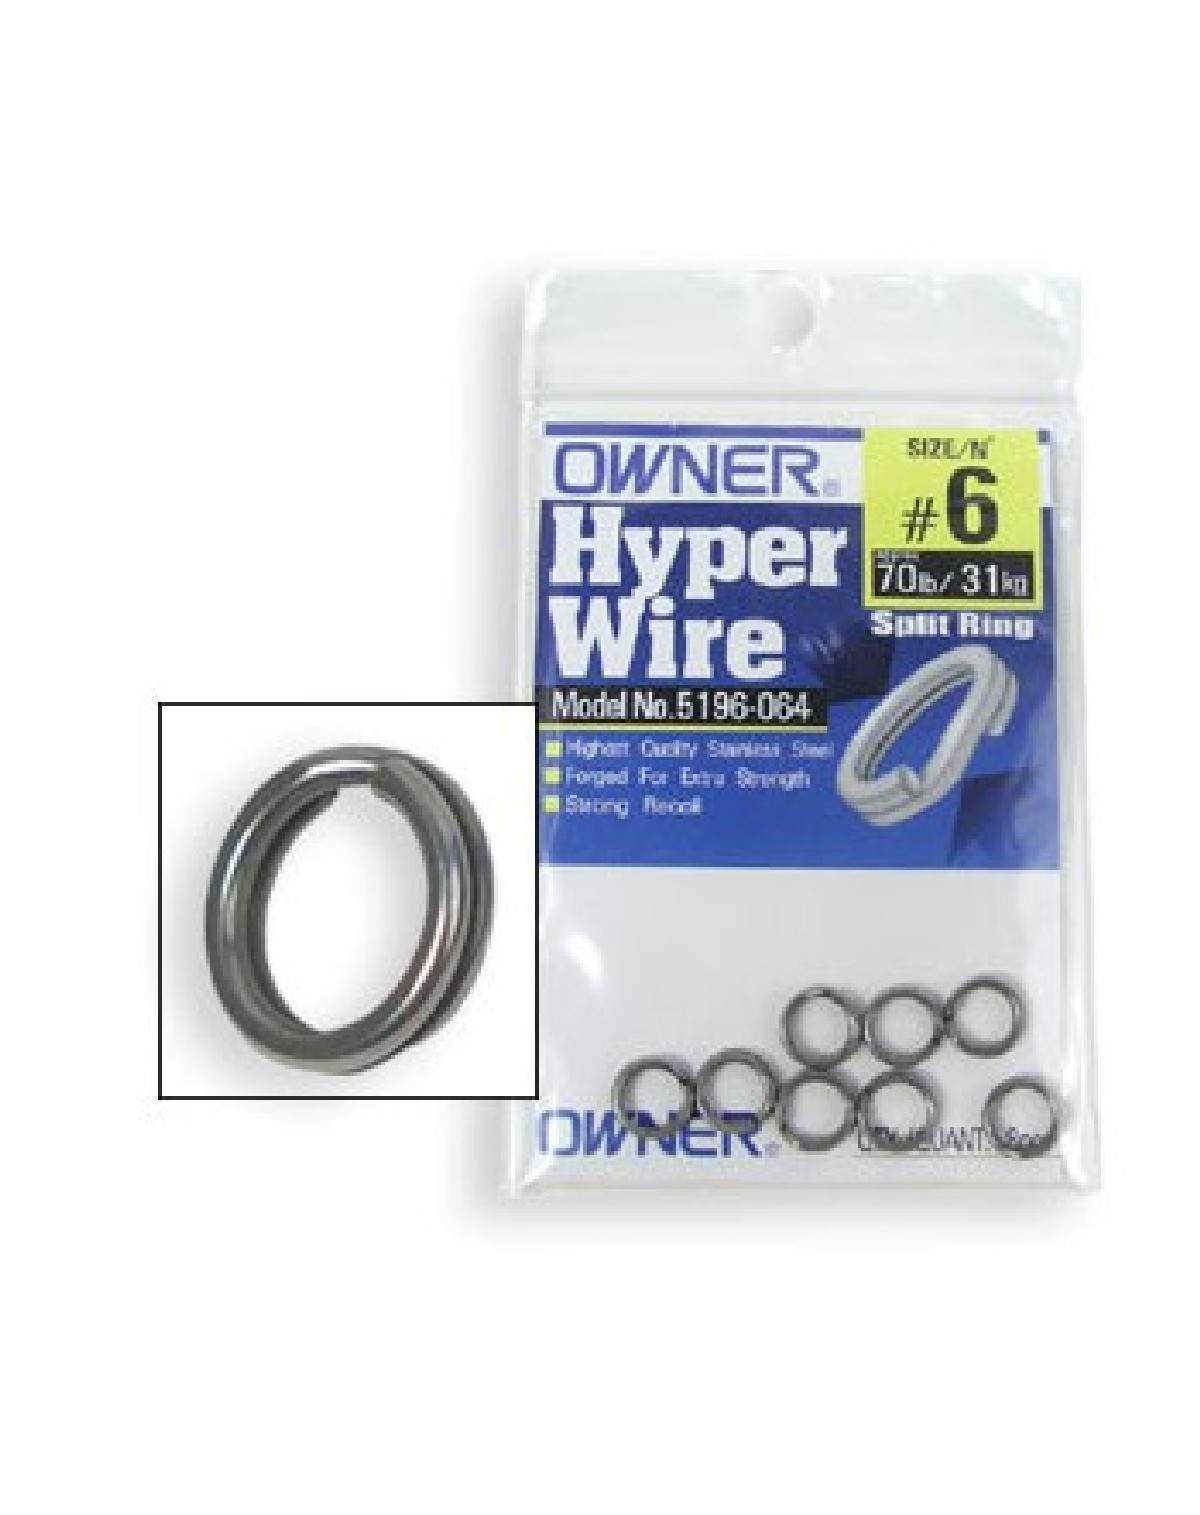 Owner Hyper wire Splitringen 5   9st. 60lb/27kg